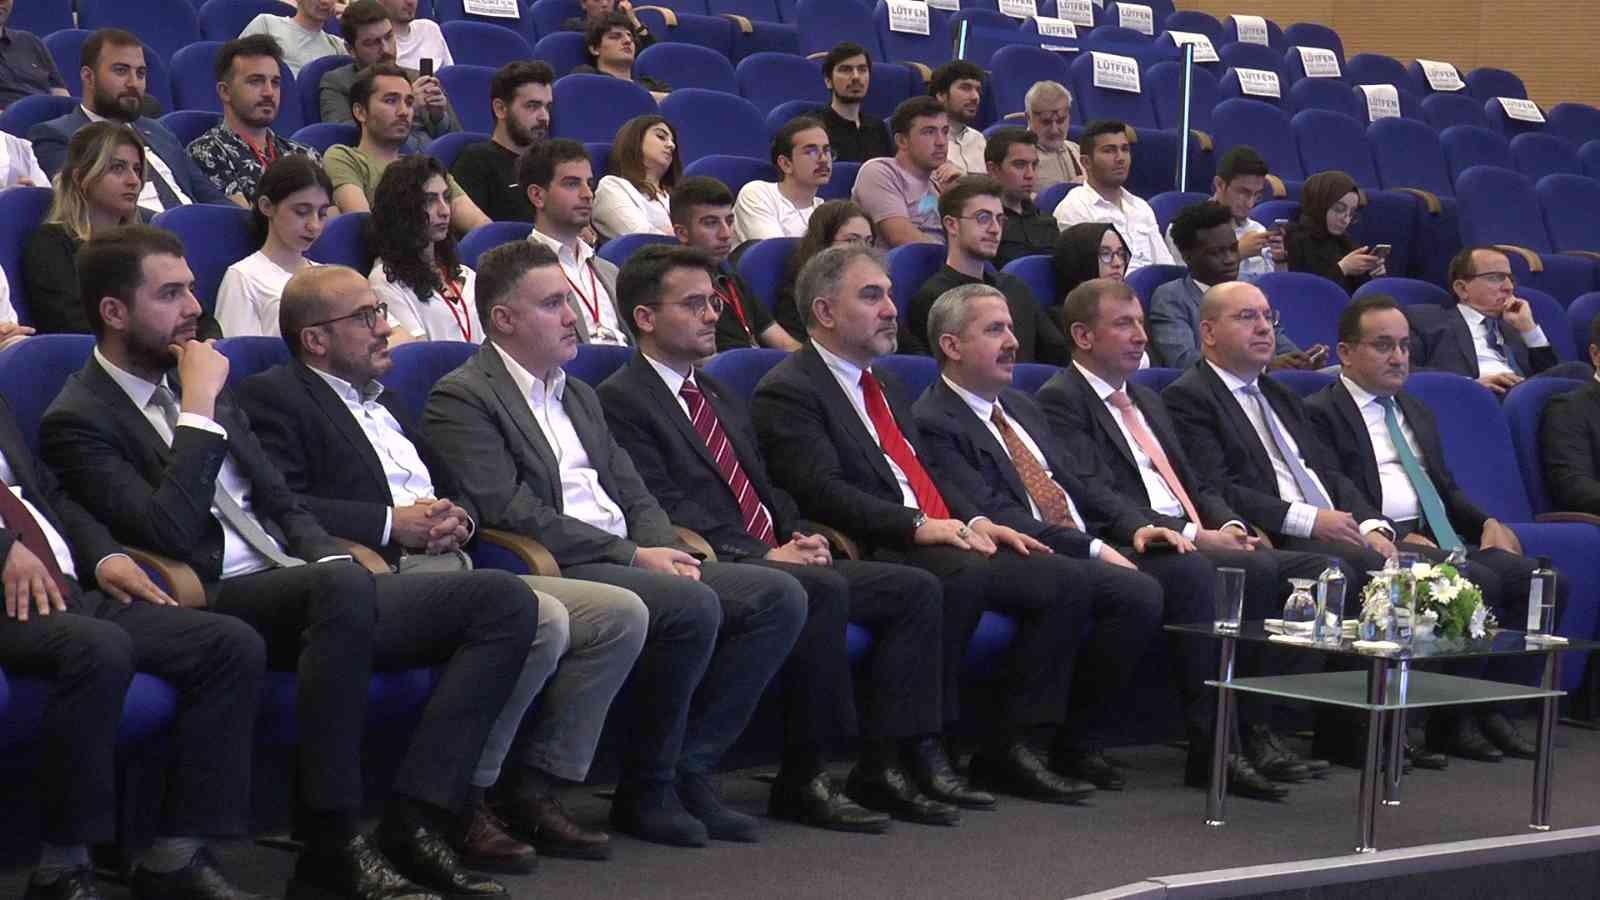 Kocaeli’nin Gebze ilçesinde Yıldız Tekno GSYO ana sponsorluğunda gerçekleştirilen İnovasyonun Finansmanı Zirvesi’ne girişimciler ve yatırımcılar ...